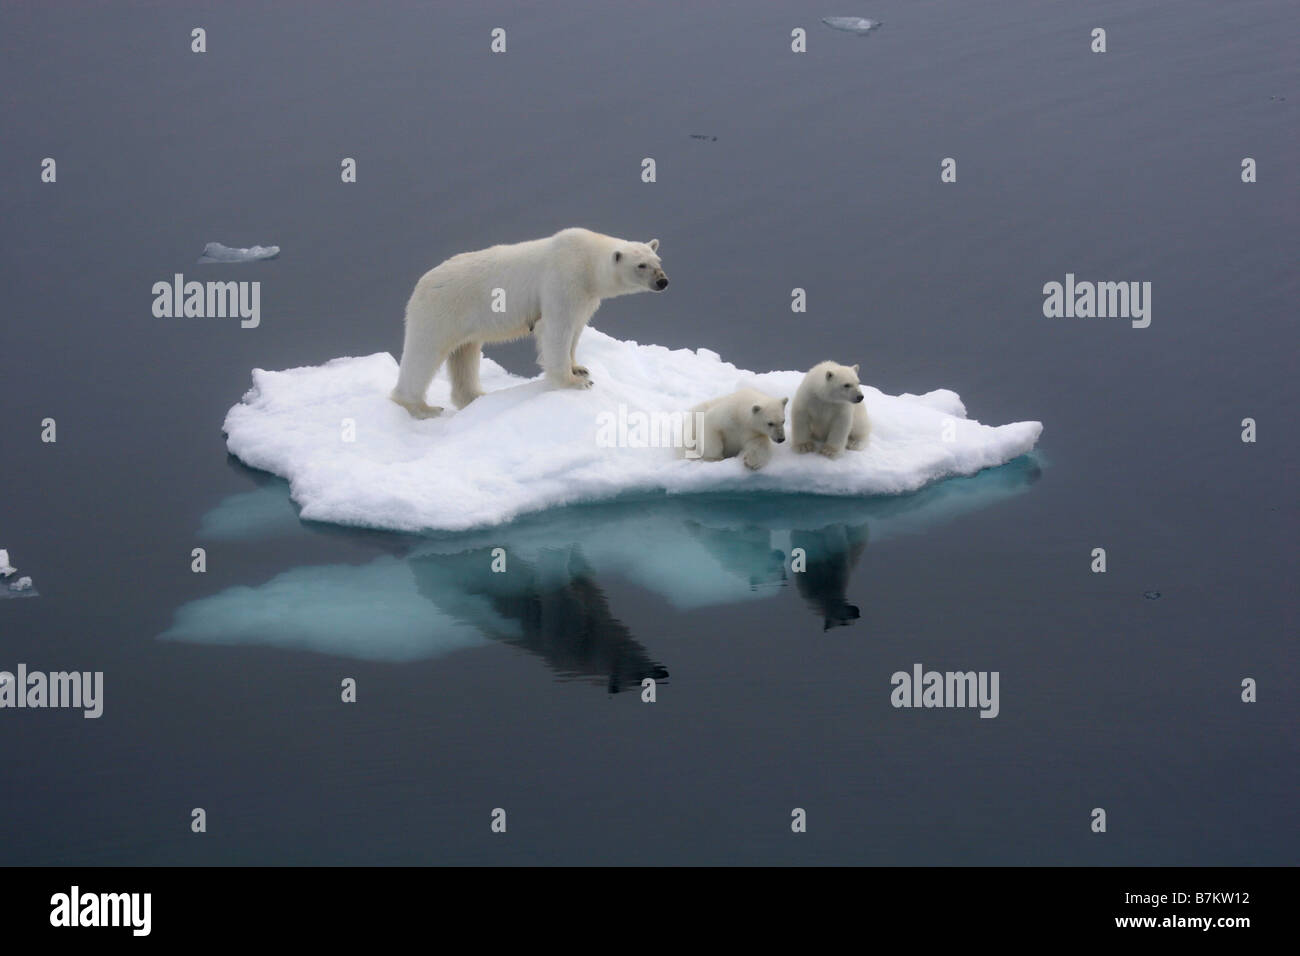 L'ours polaire et 2 petits oursons sur petit banc de glace, à la recherche dans la distance. Banc de glace se trouve sur l'océan Arctique. Banque D'Images